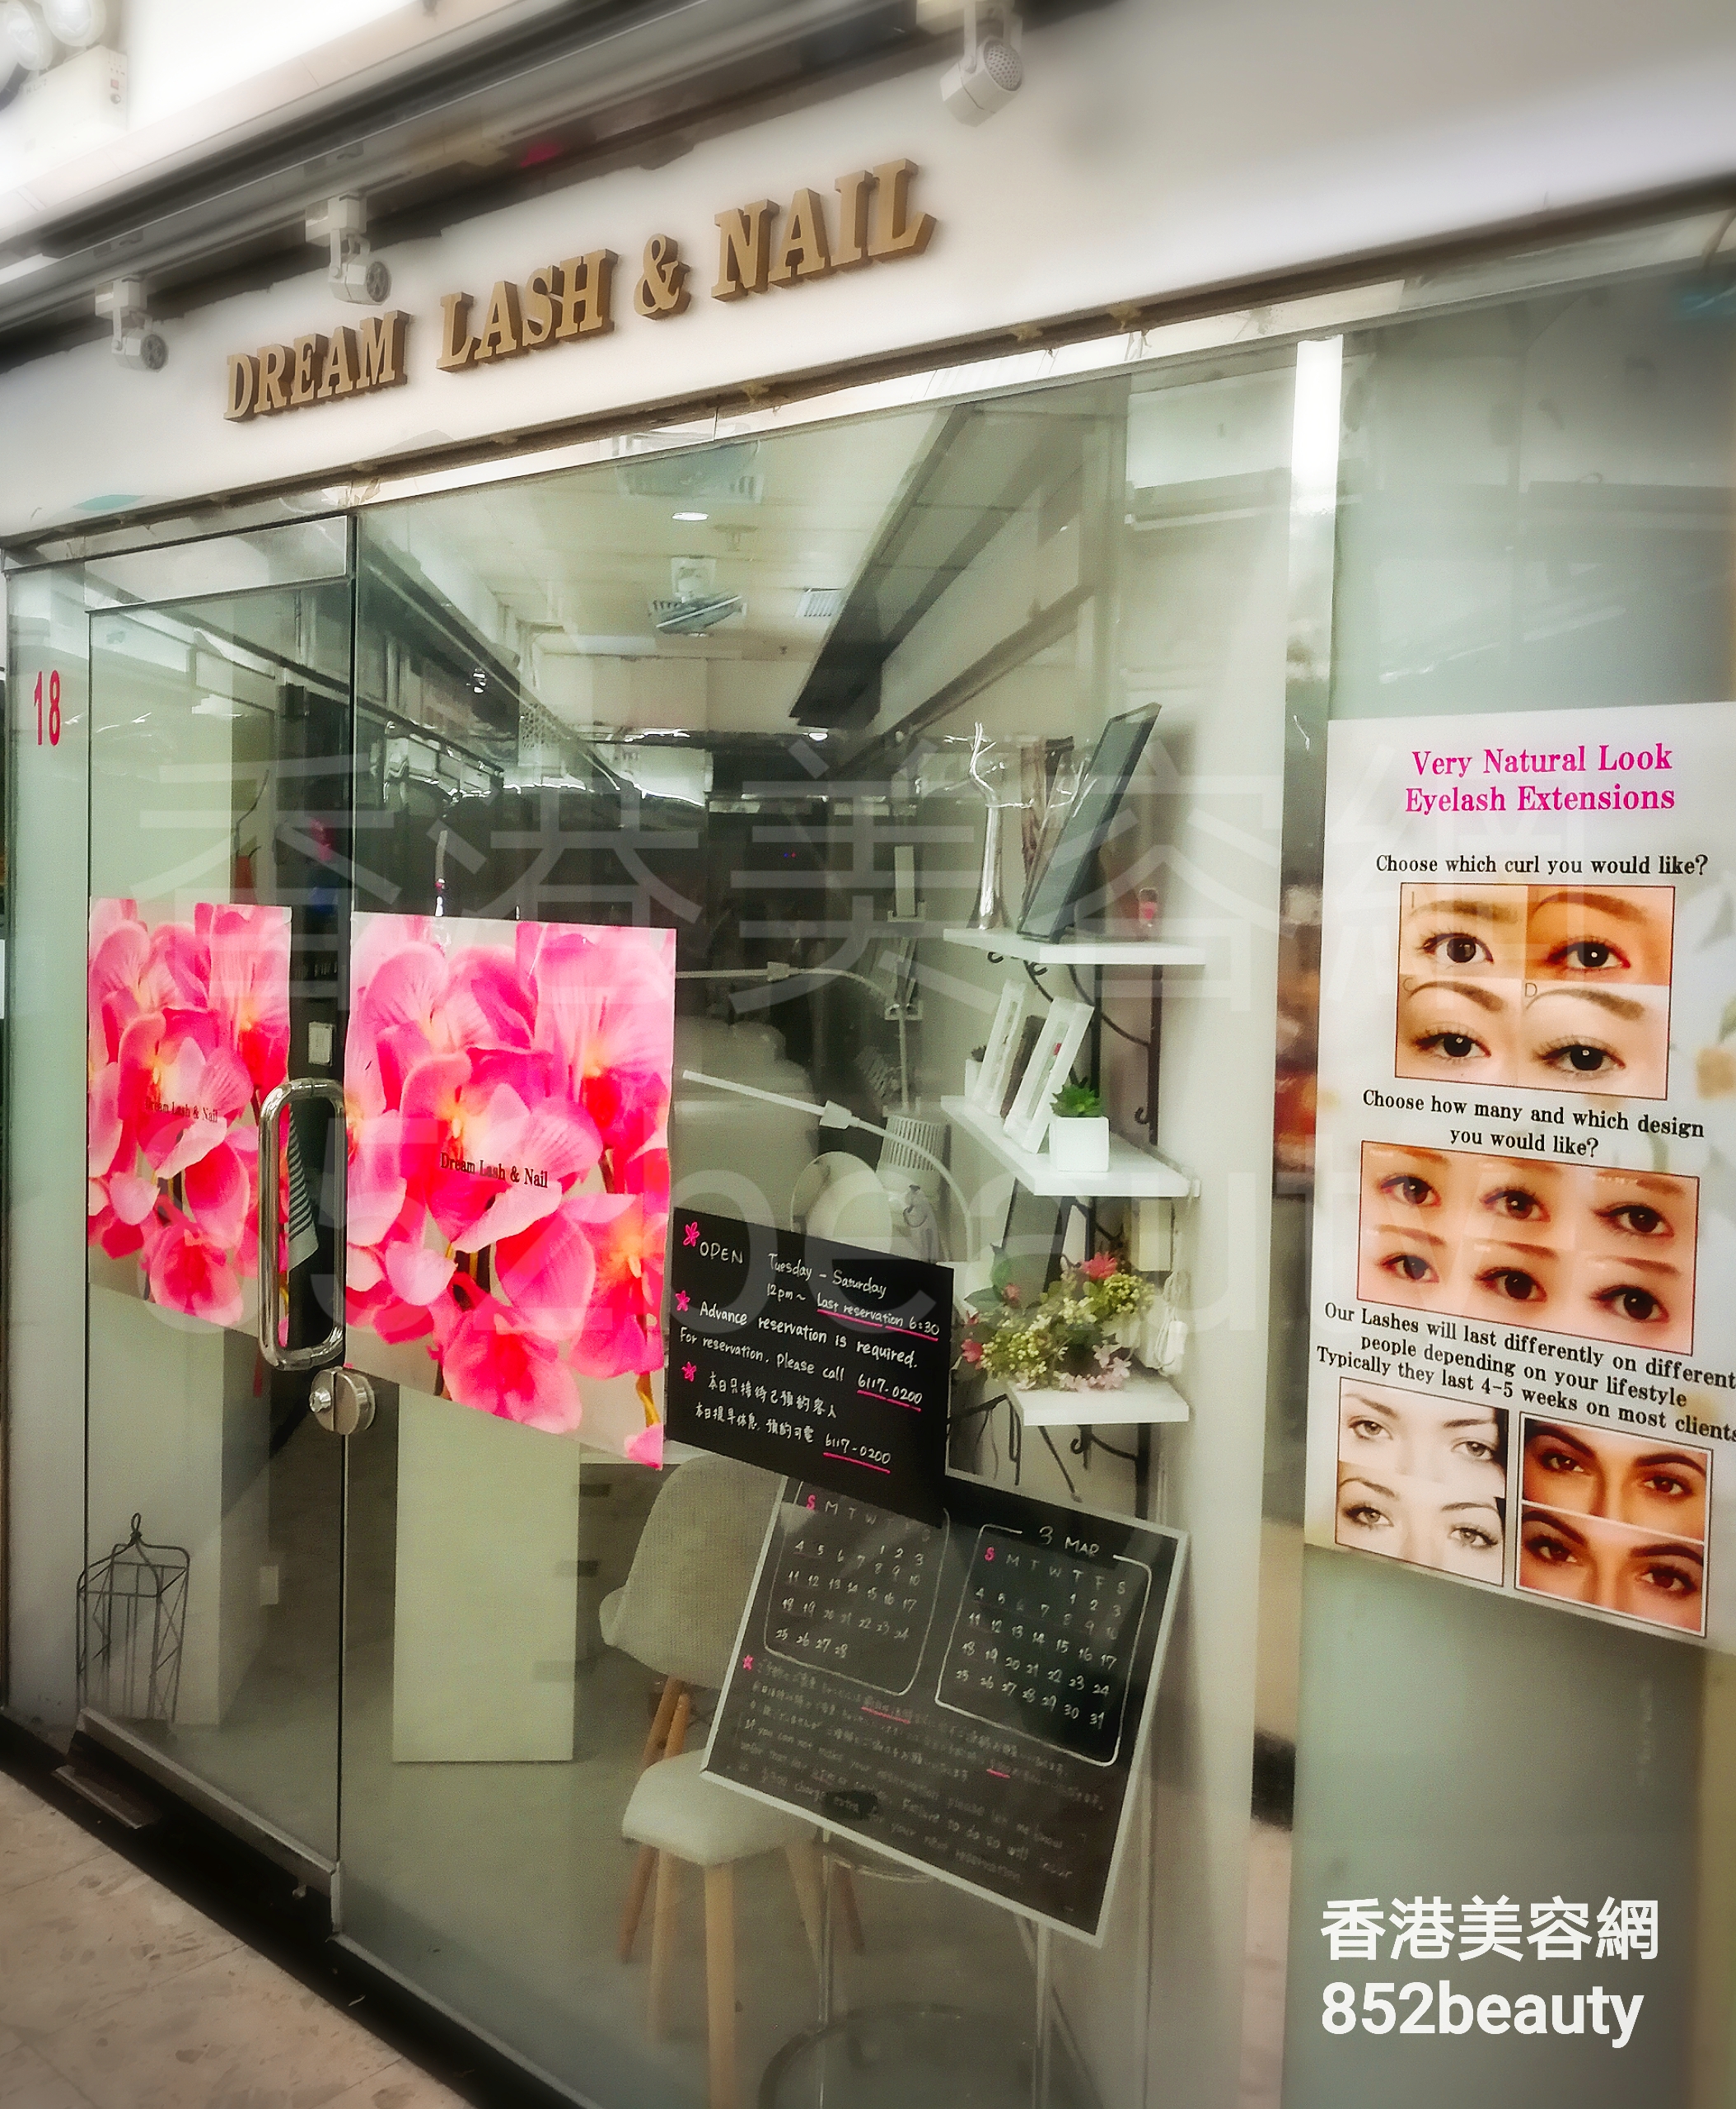 美容院 Beauty Salon: DREAM LASH & NAIL